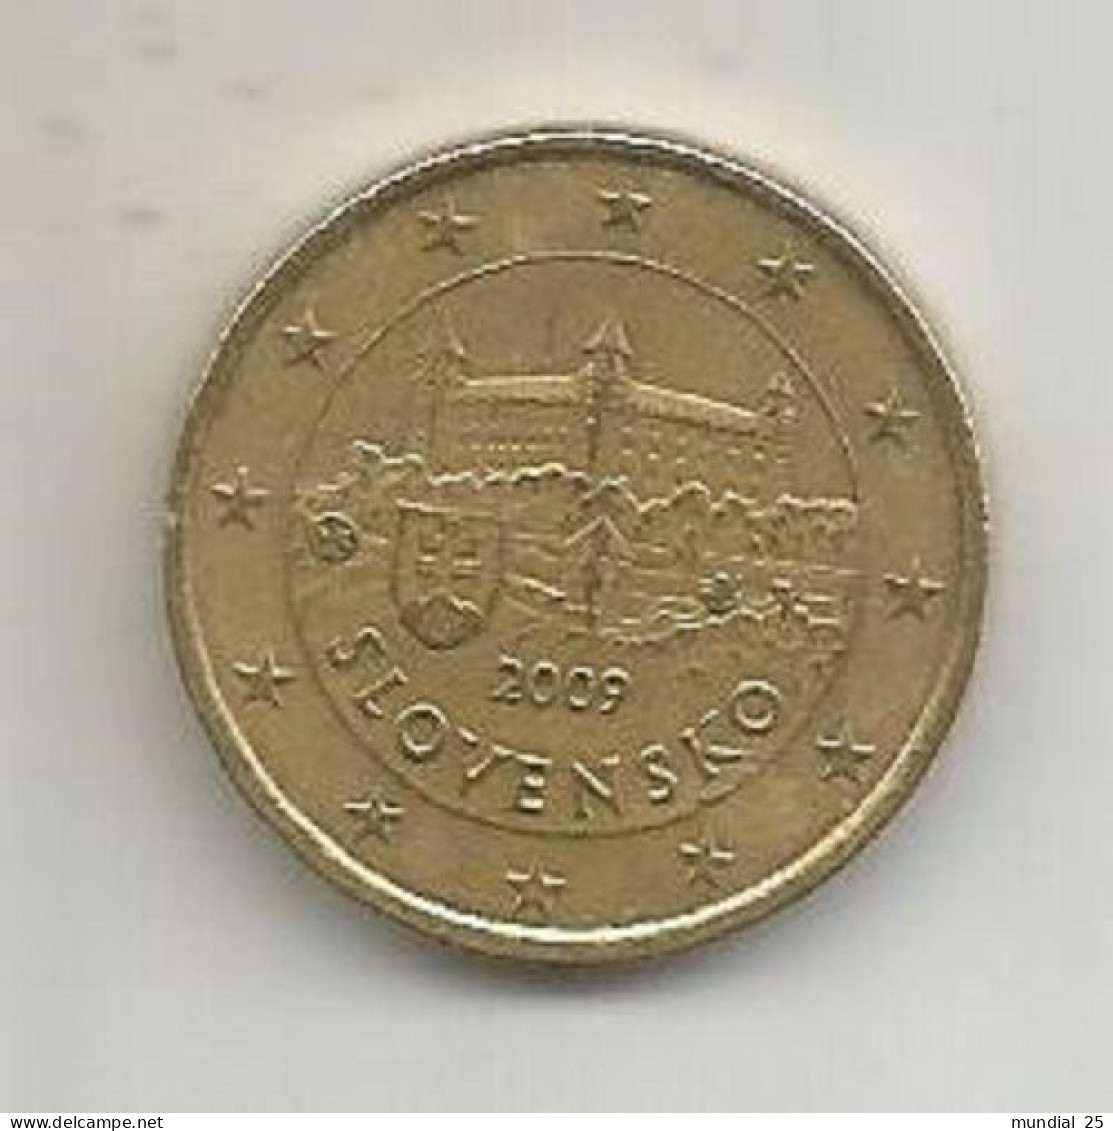 SLOVAKIA 50 EURO CENT 2009 - Slovaquie